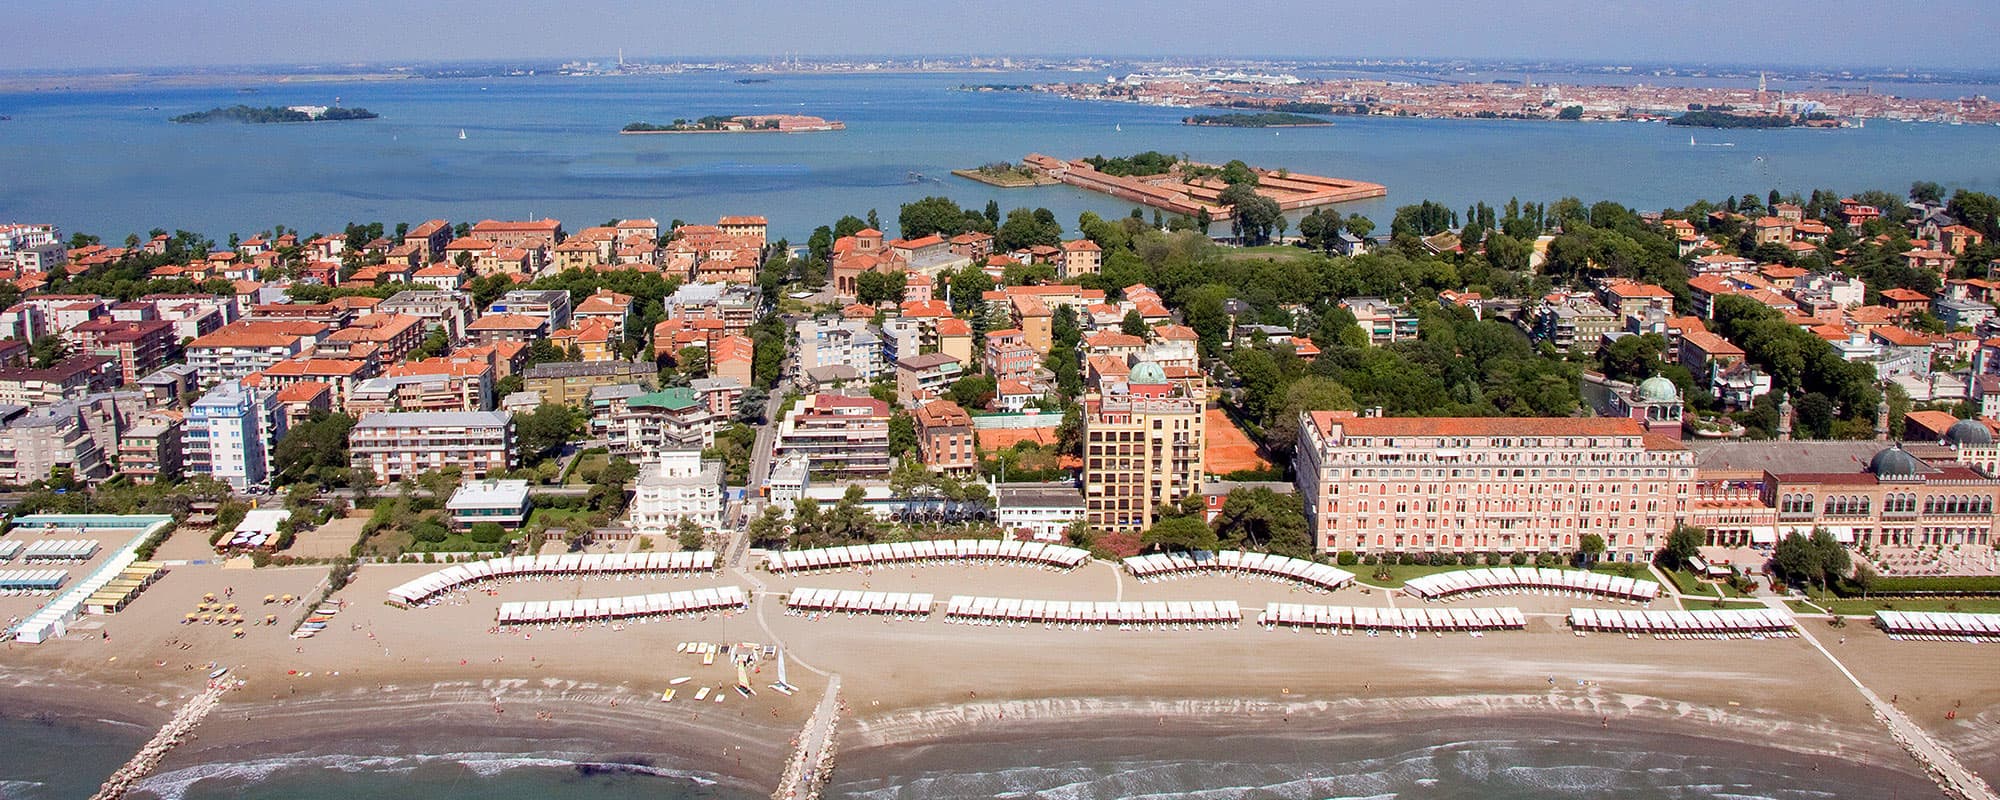 L'Hotel Villa Pannonia è situato a 300 metri dalla stazione dei vaporetti per raggiungere Venezia.